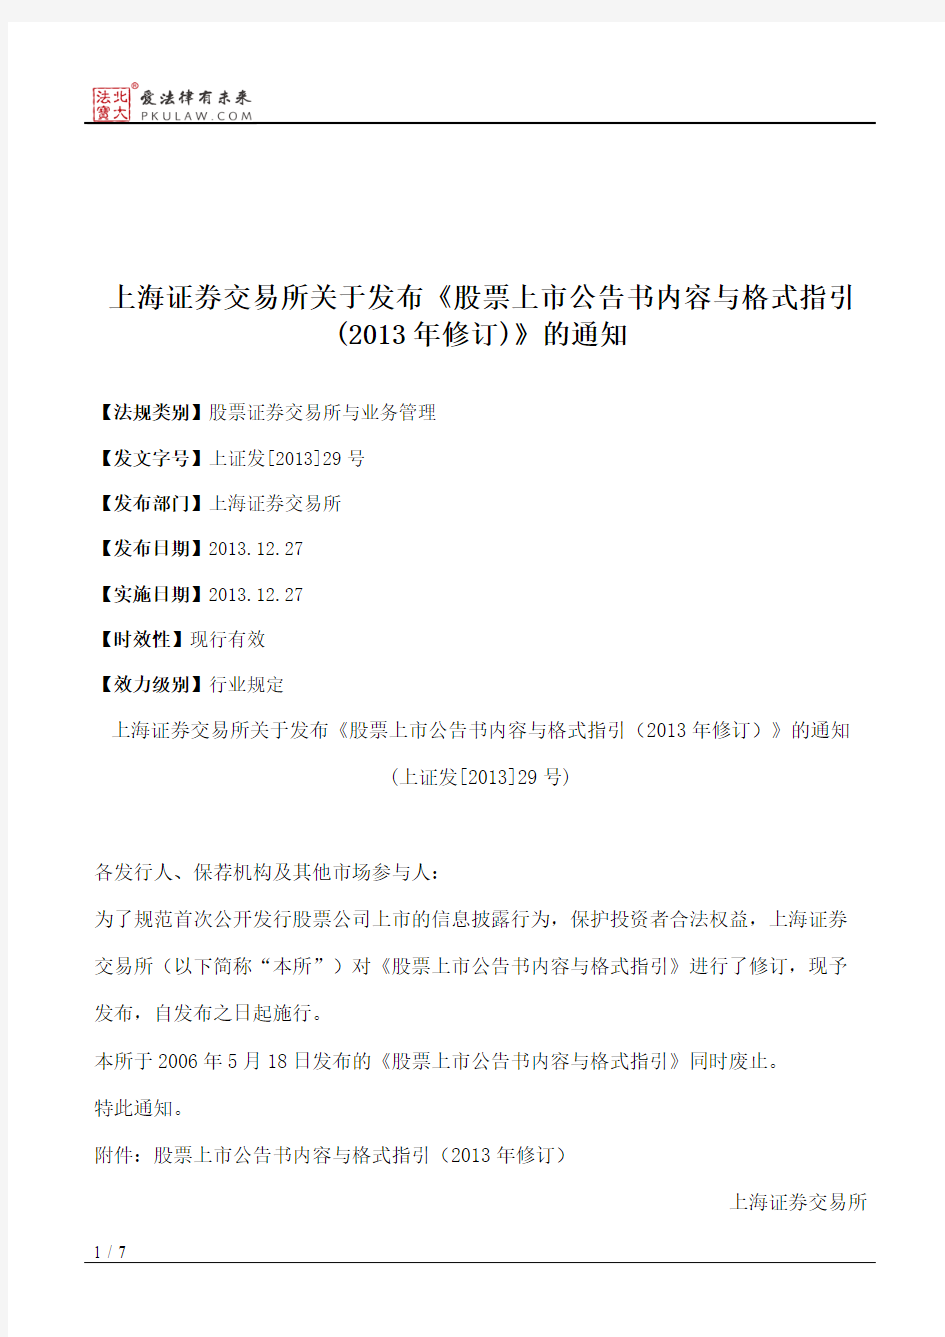 上海证券交易所关于发布《股票上市公告书内容与格式指引(2013年修